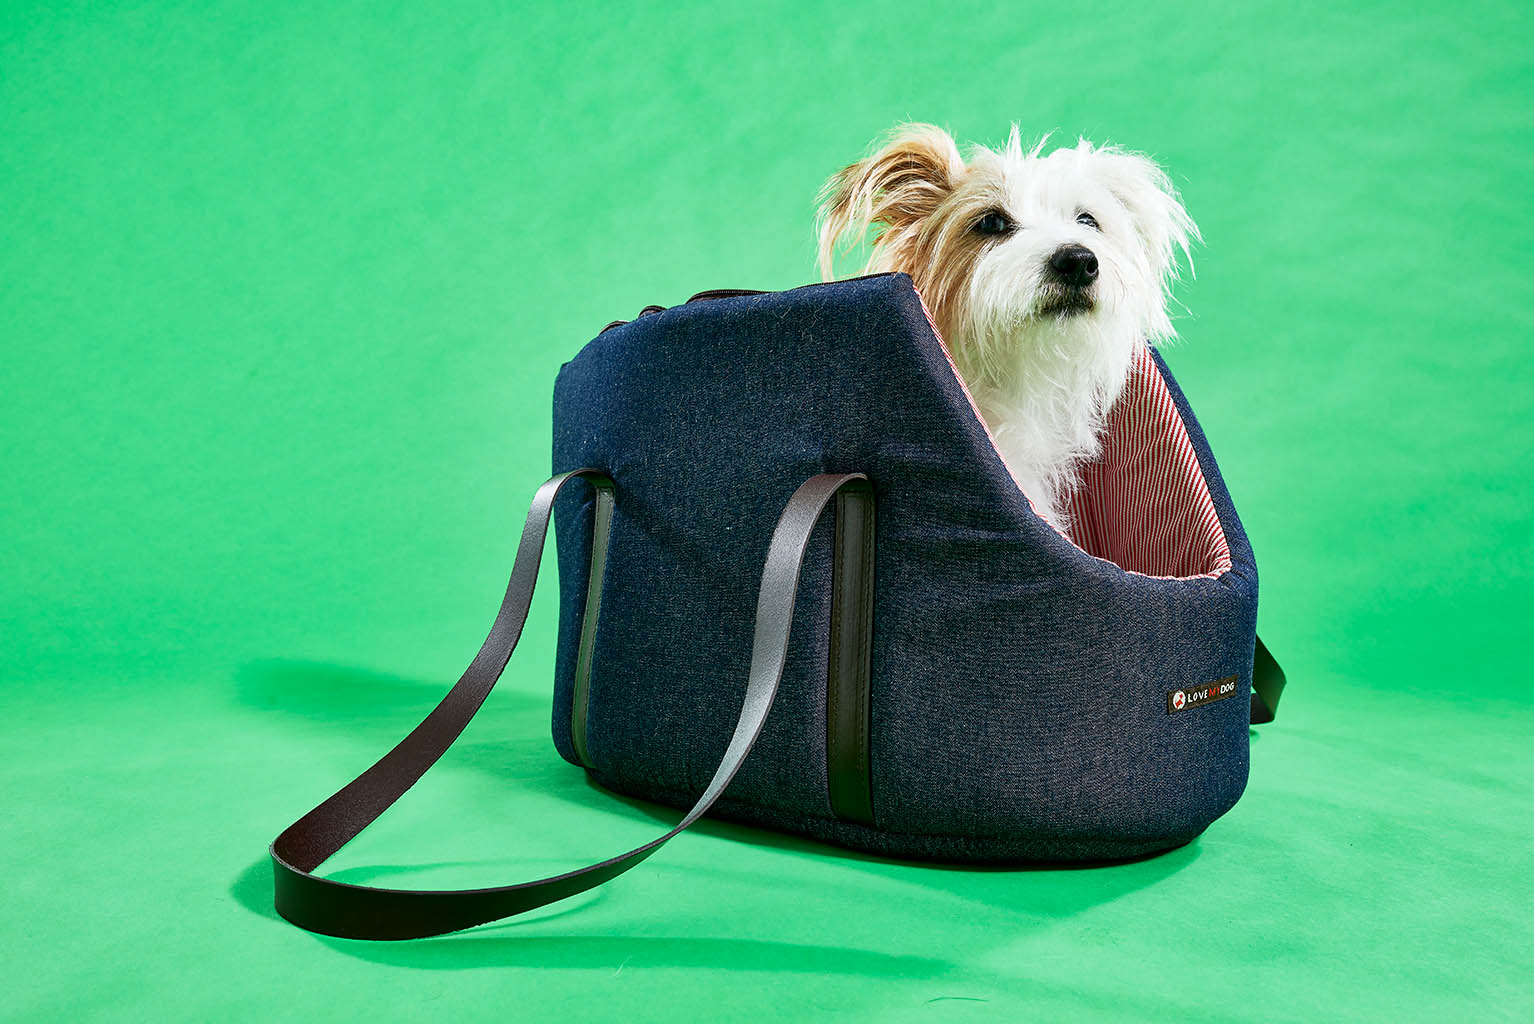 Packshot Factory - Model - Lish dog carrier bag